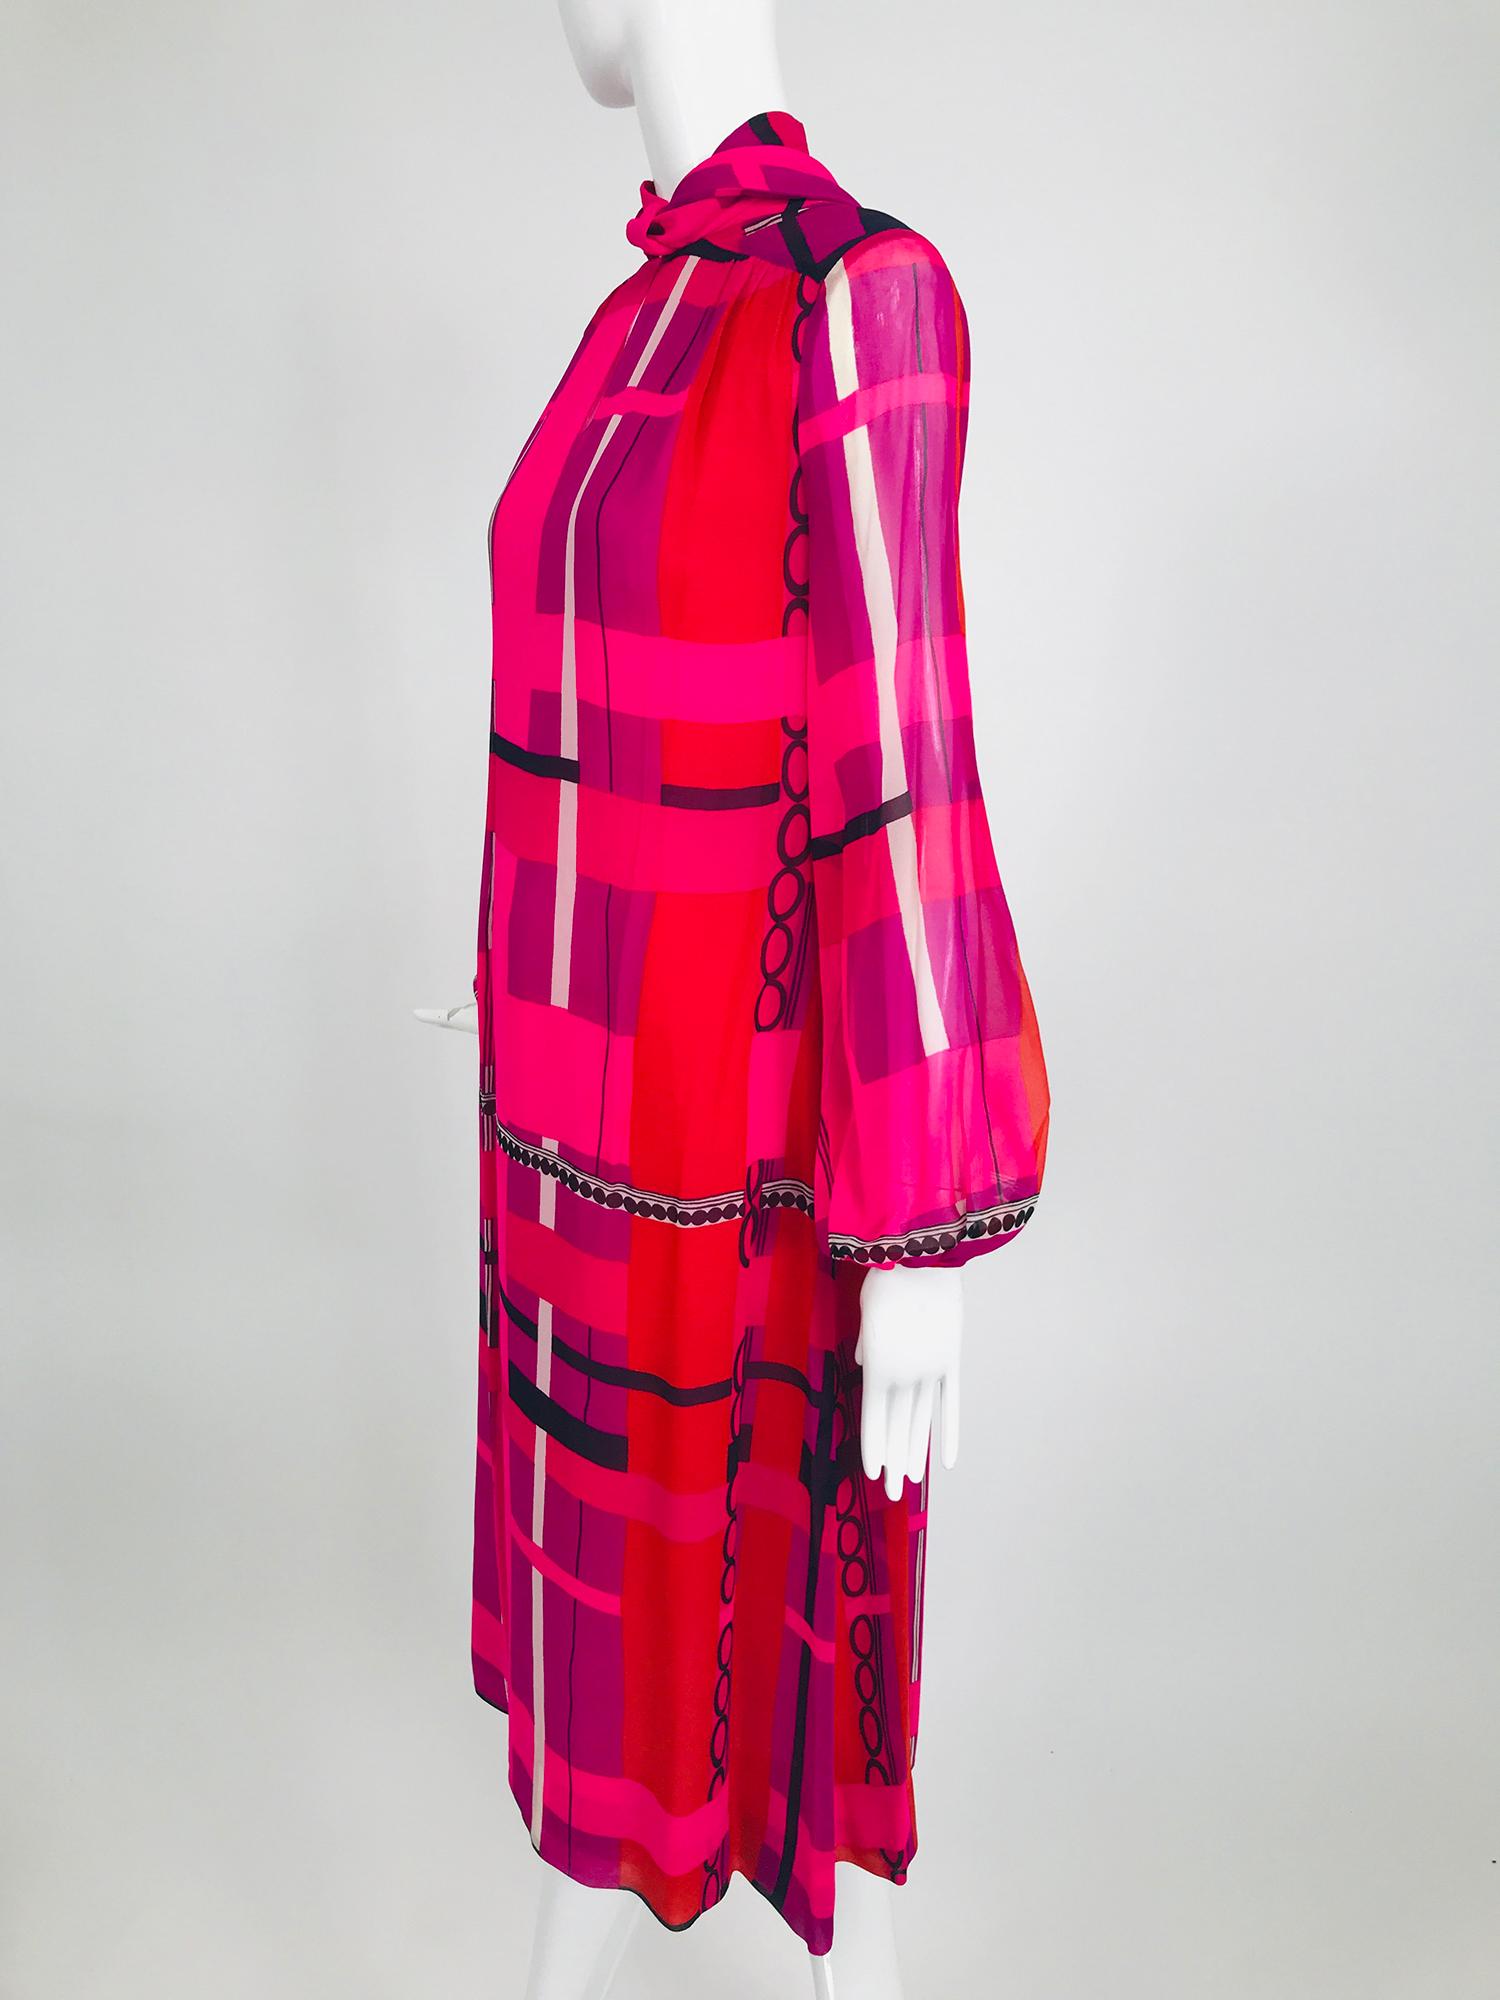 La Mendola Couture Kleid aus Seidenchiffon mit modernistischem Druck in Pink, Orange, Schwarz und Weiß aus den 1970er Jahren. Dieses kühne und leuchtende Kleid ist perfekt für jeden besonderen Anlass. Das Chiffonkleid ist mit pinkfarbener Viskose